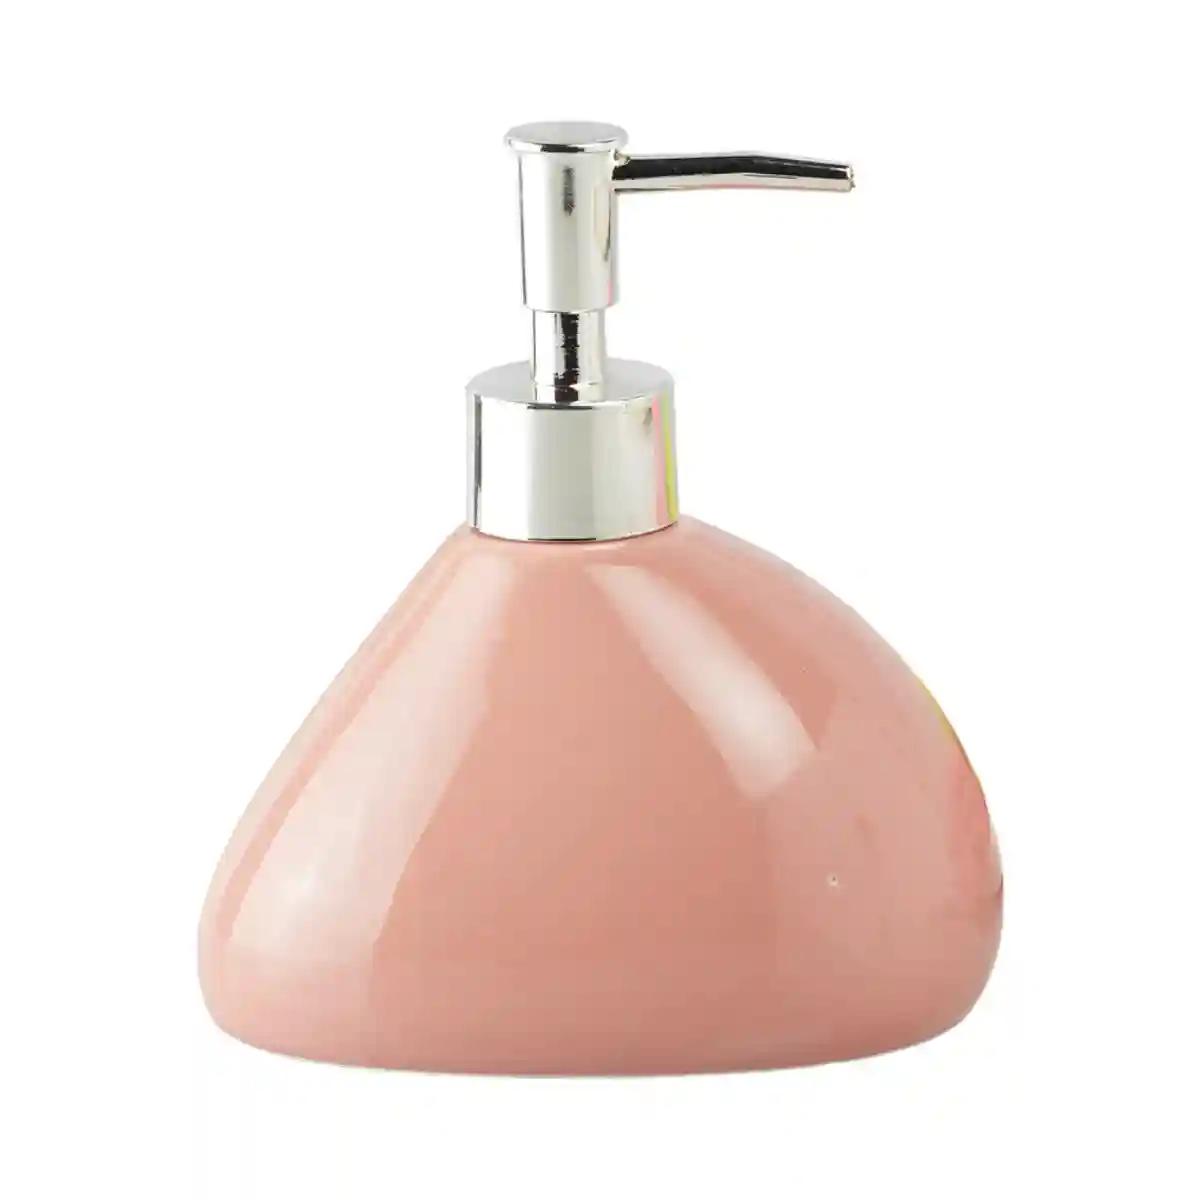 Kookee Ceramic Soap Dispenser for Bathroom handwash, refillable pump bottle for Kitchen hand wash basin, Set of 2 - Pink (7967)